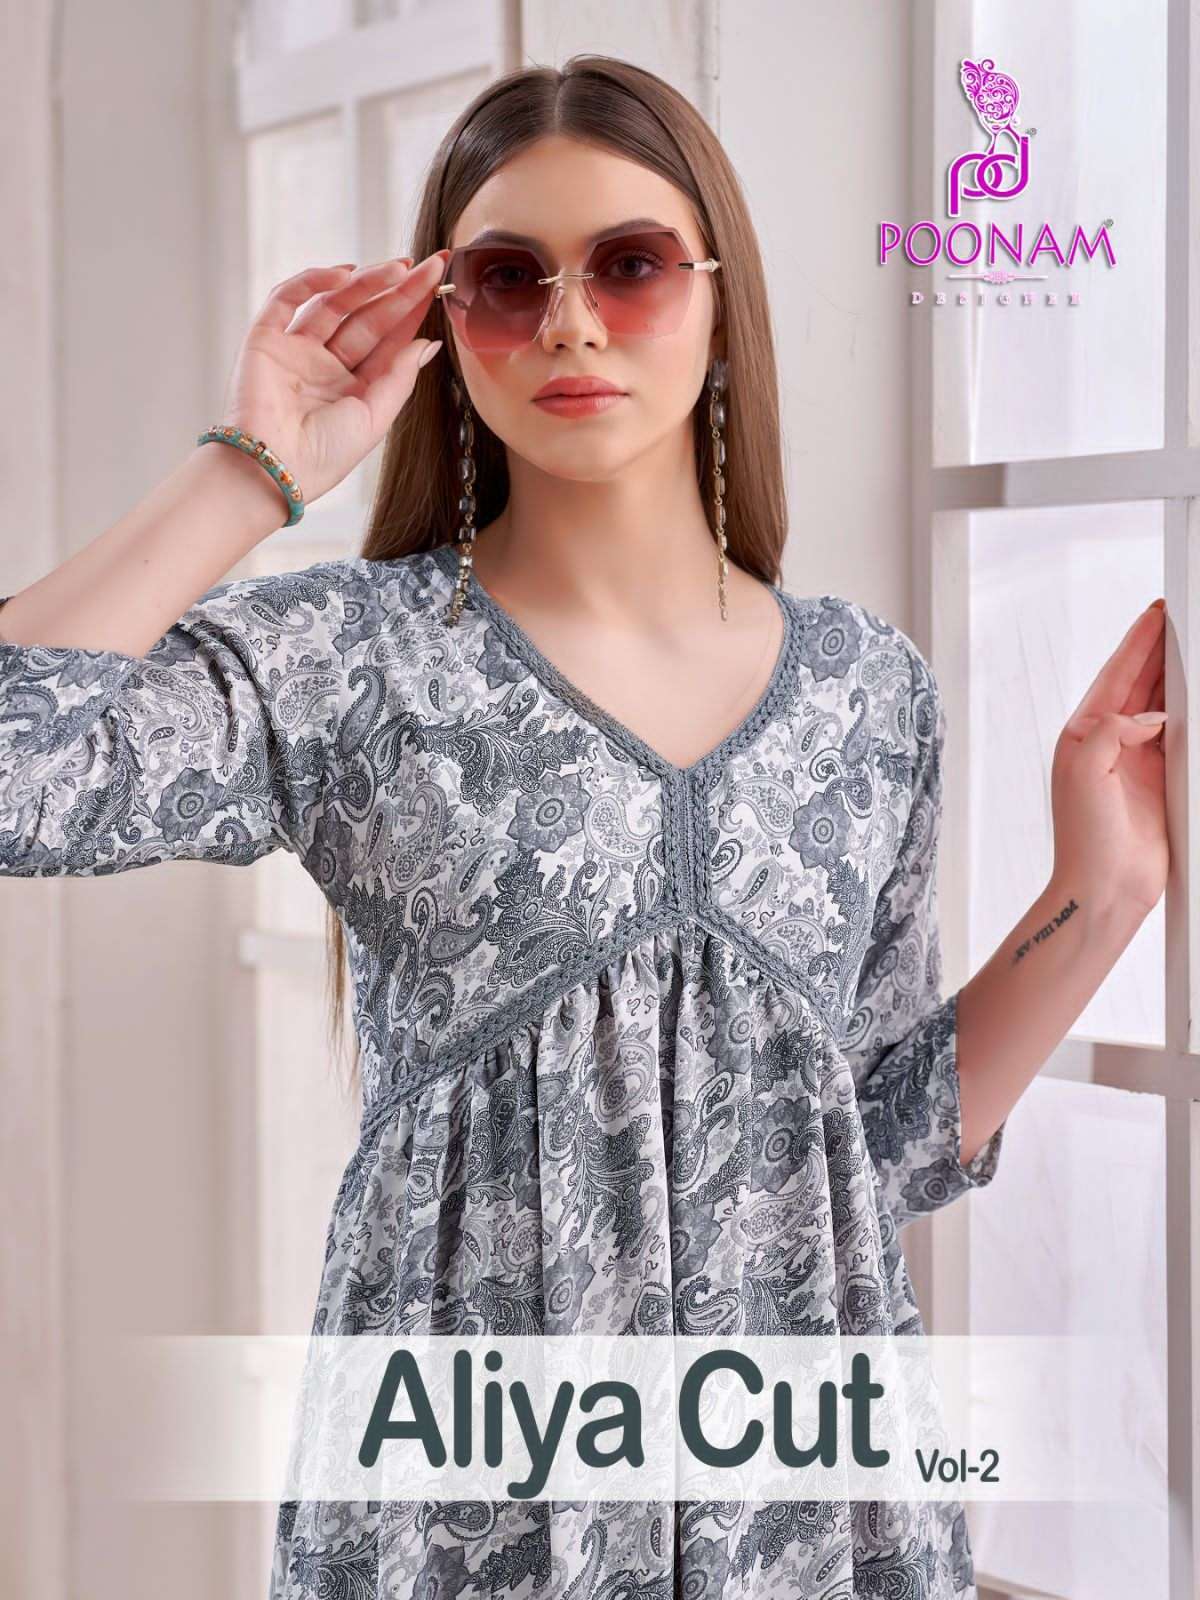 poonam aliya cut vol 2 series 1001-1004 imported viscose gown